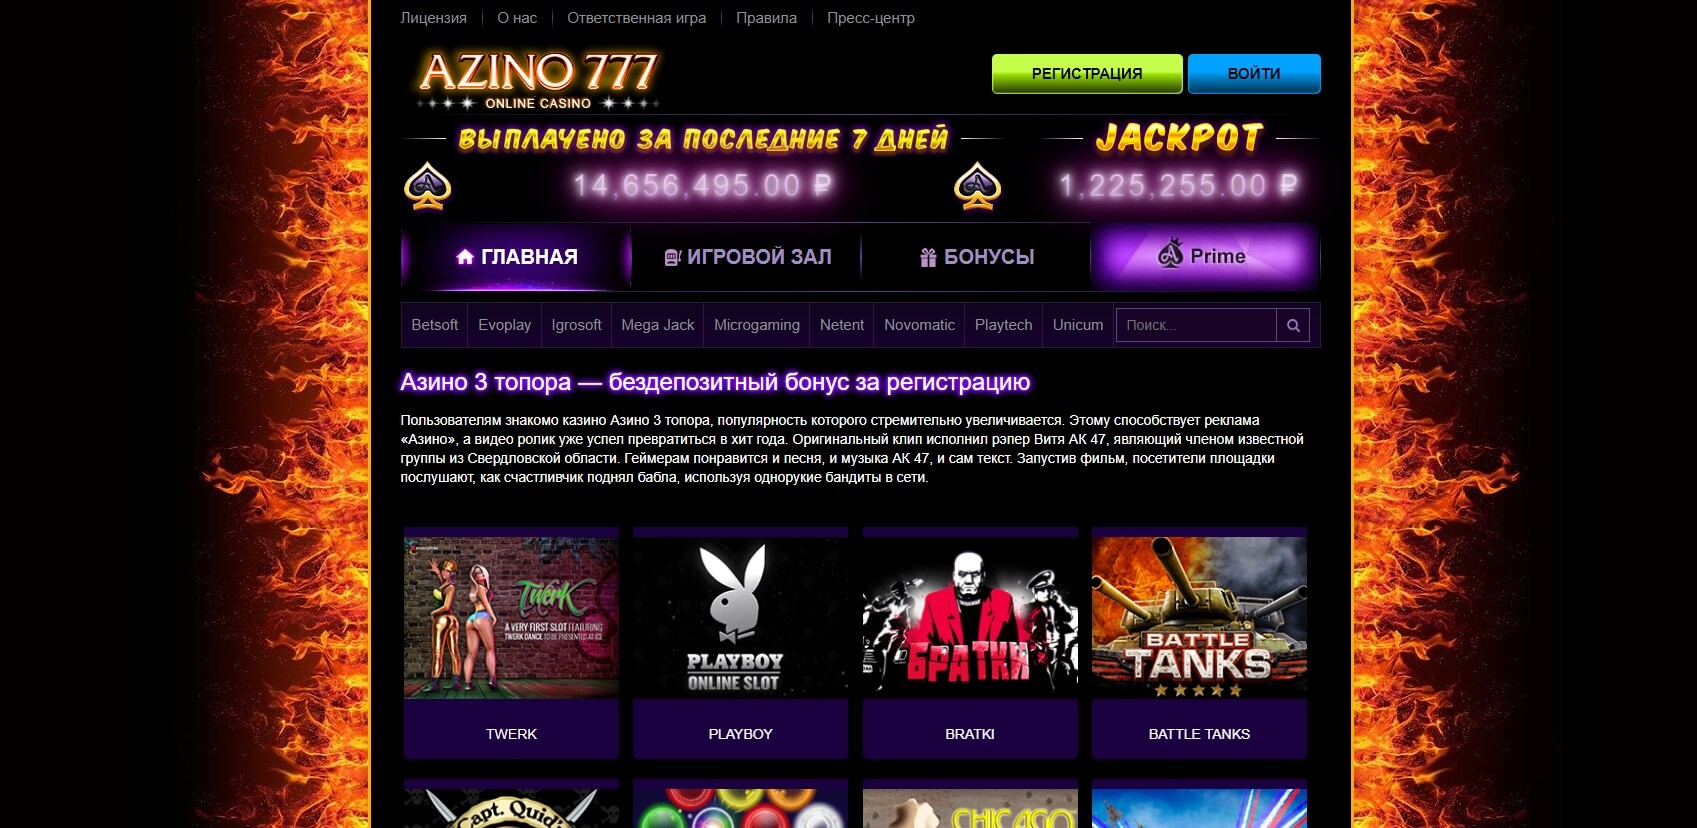 азино777 официальный сайт бонус при регистрации скачать игру